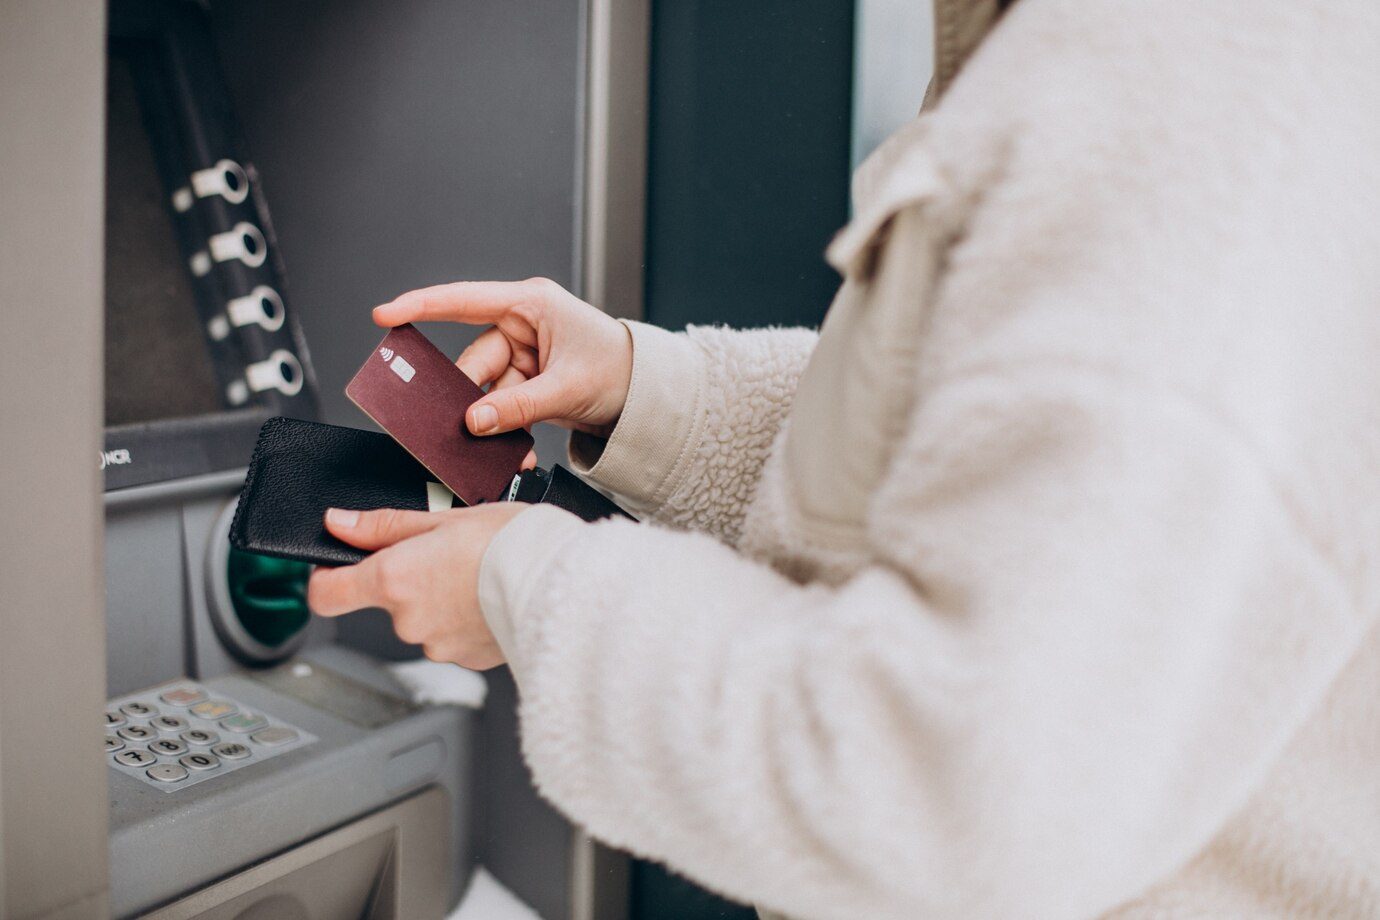 Kejayaan ATM dan Kartu Debit Akan Segera Berakhir, Transaksi Digital Menguat!